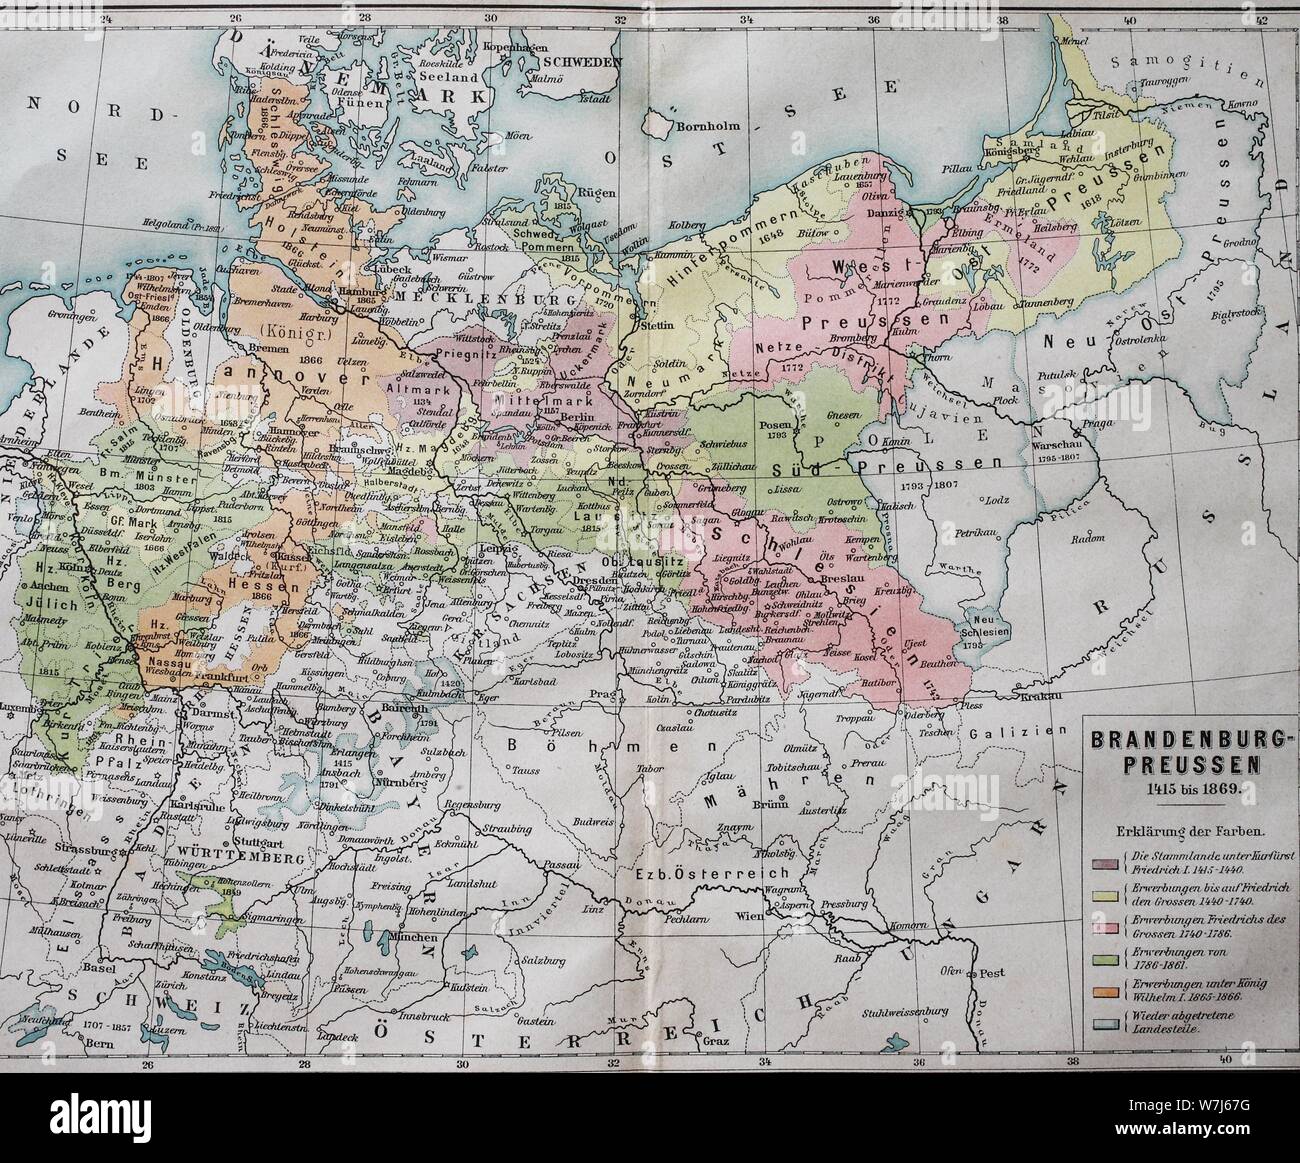 Karte, Brandenburg-Preußen von 1415-1869, historische Darstellung, Deutschland Stockfoto